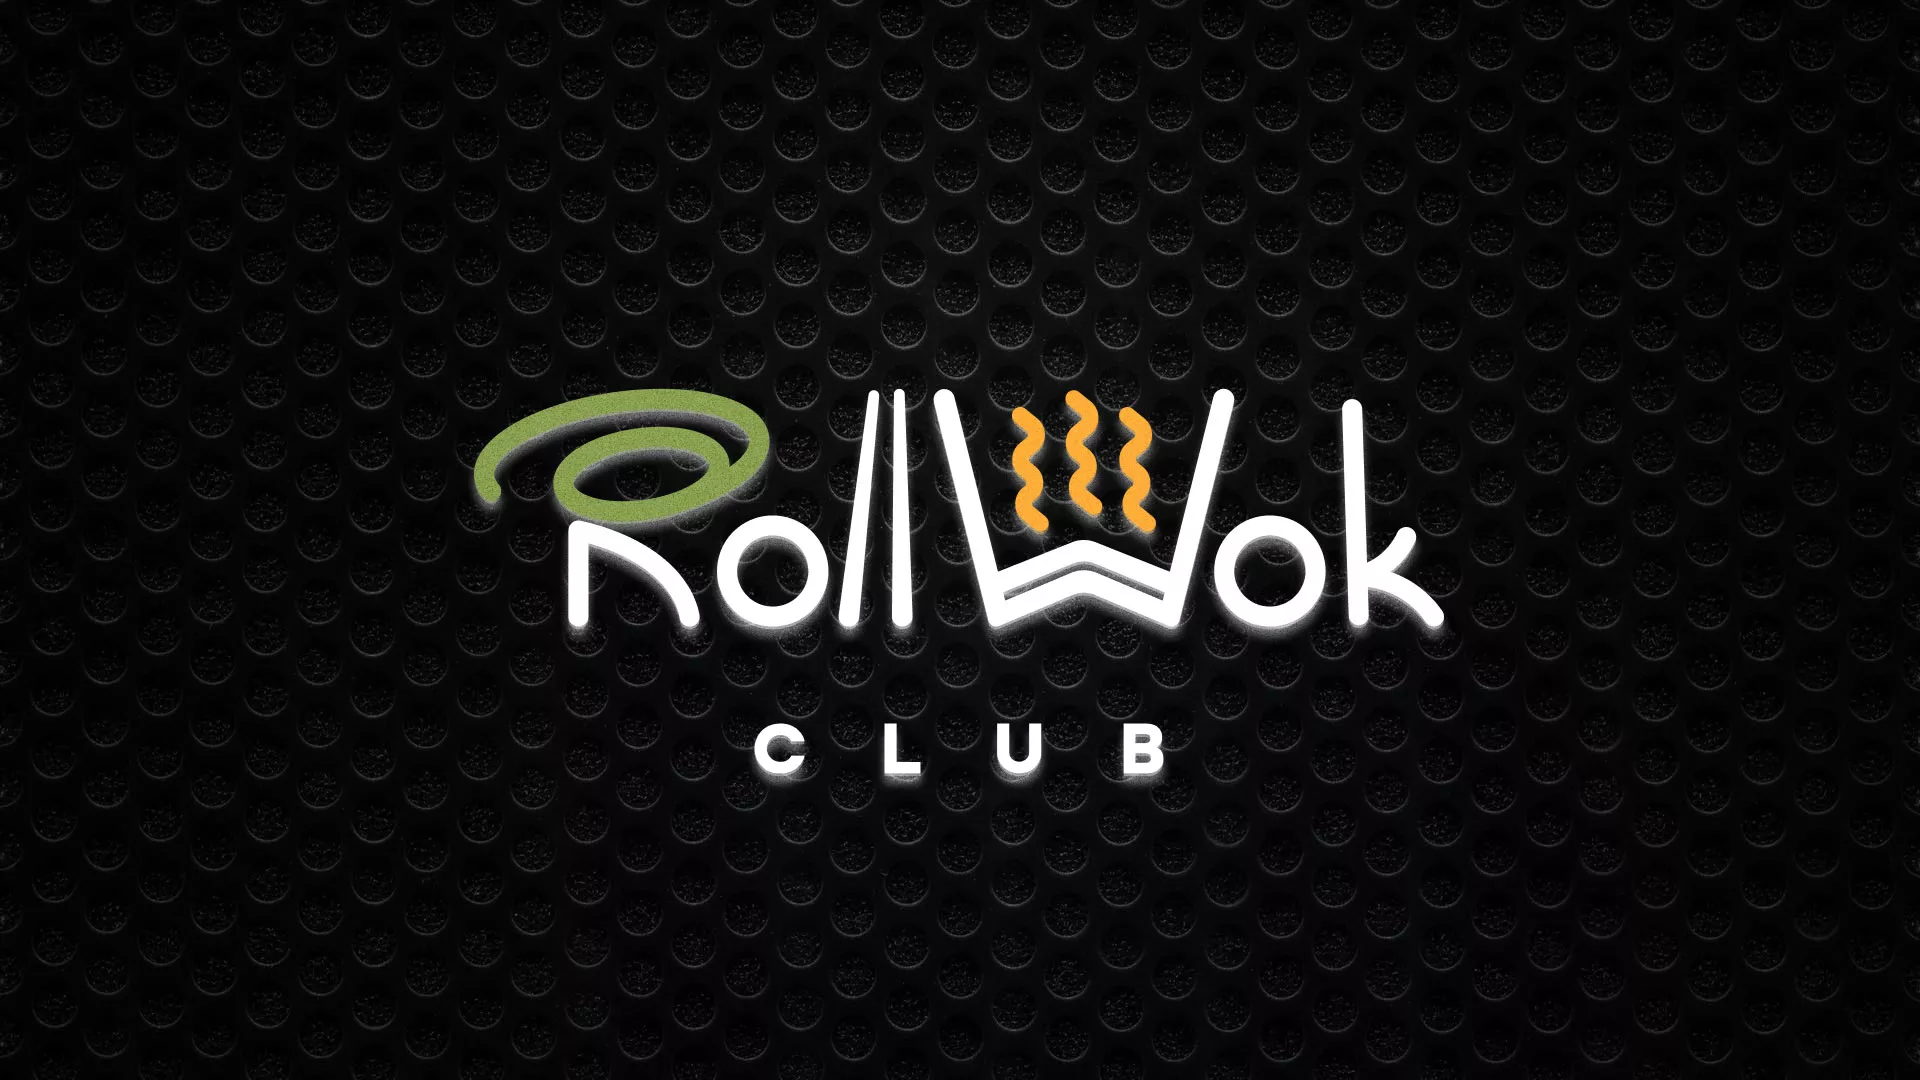 Брендирование торговых точек суши-бара «Roll Wok Club» в Волжском